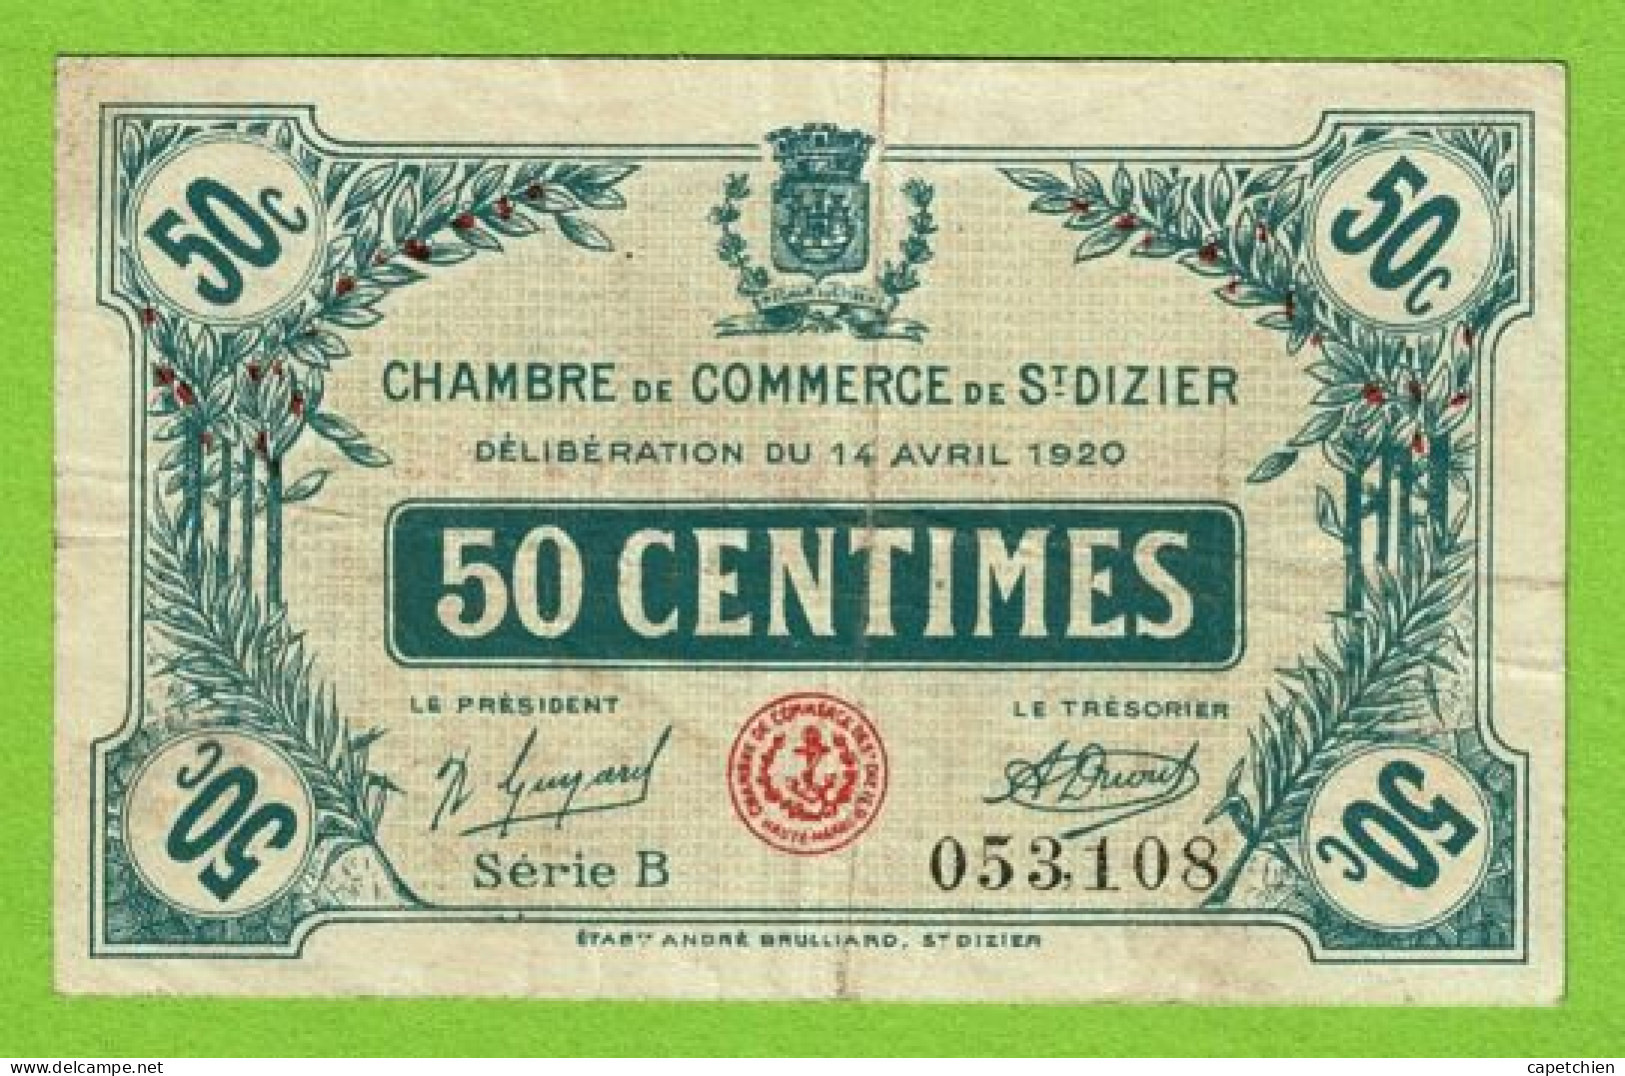 FRANCE / CHAMBRE De COMMERCE De SAINT DIZIER / 50 CENT./ 14 AVRIL 1920 / N° 053,108 / SERIE B - Chamber Of Commerce